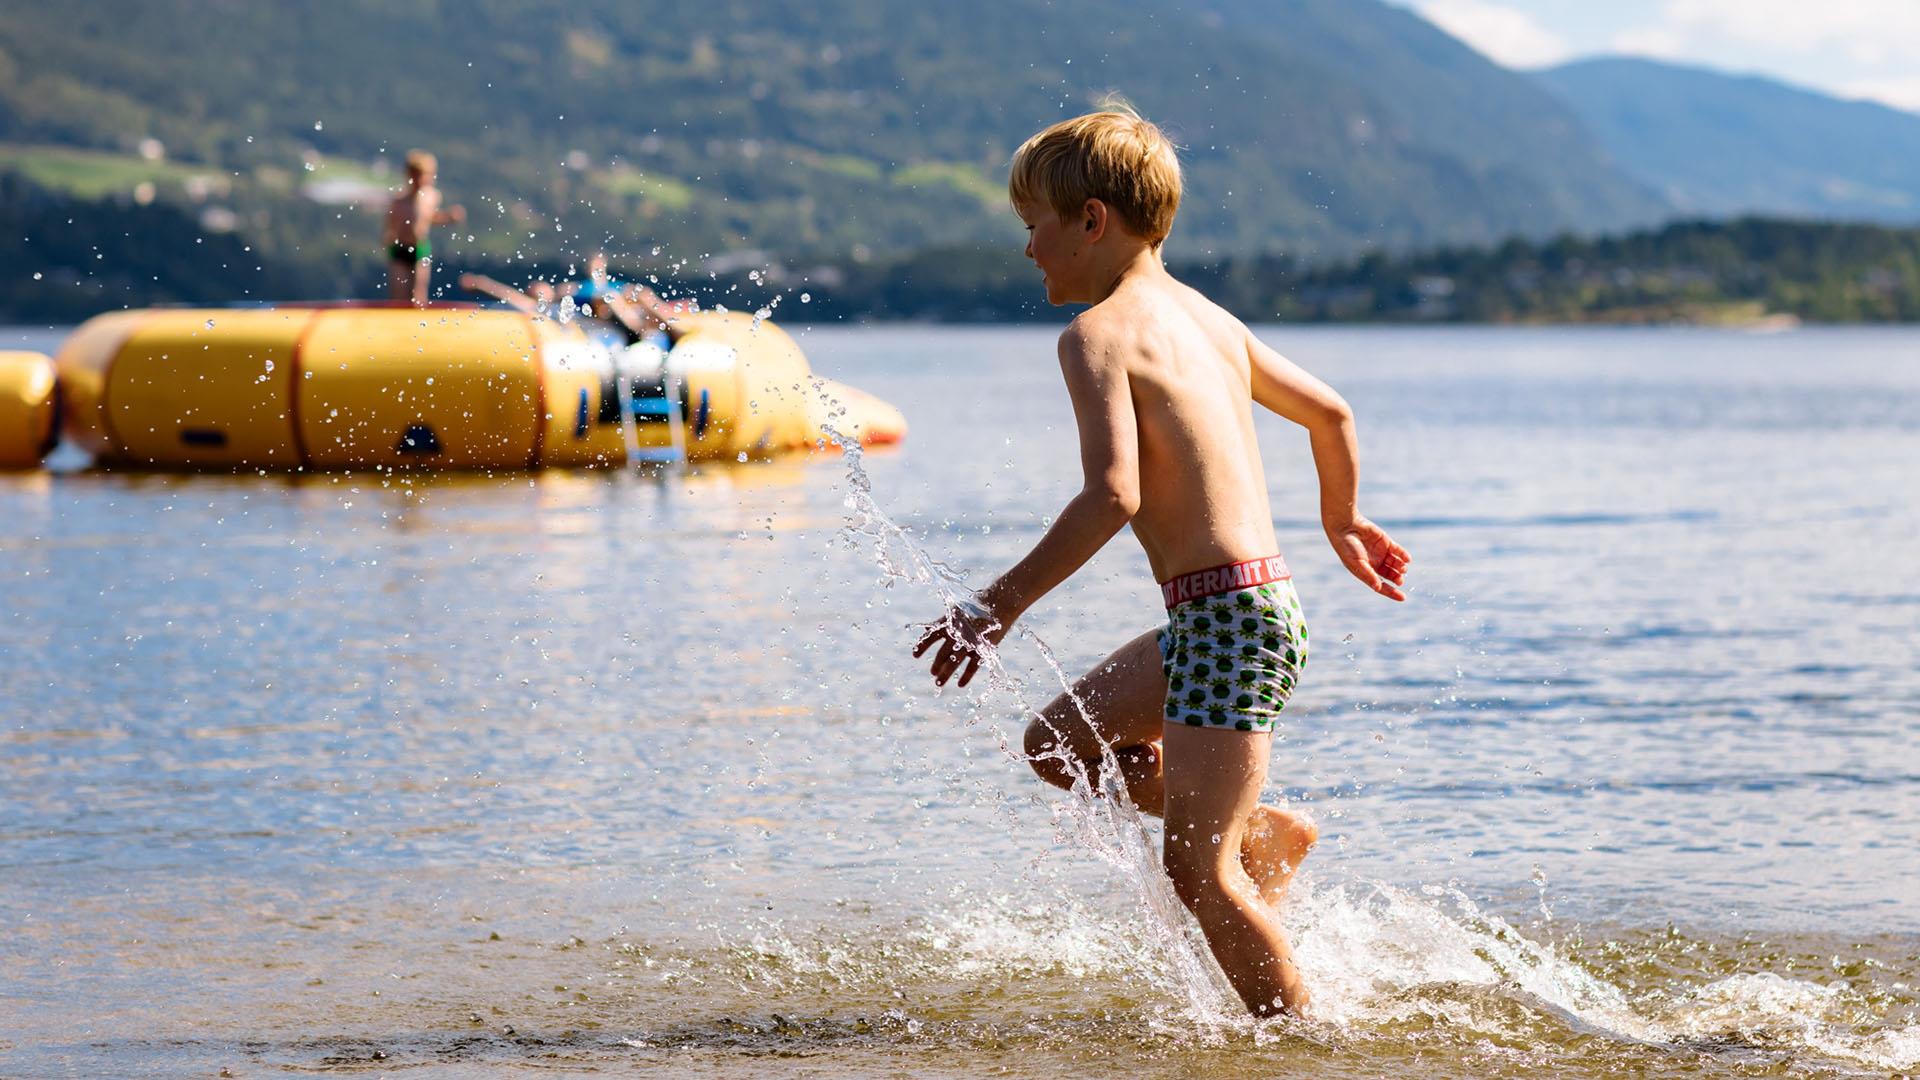 En gutt løper ut i vannet, der det ligger en gul lekeflåte lenger ut i vannet.